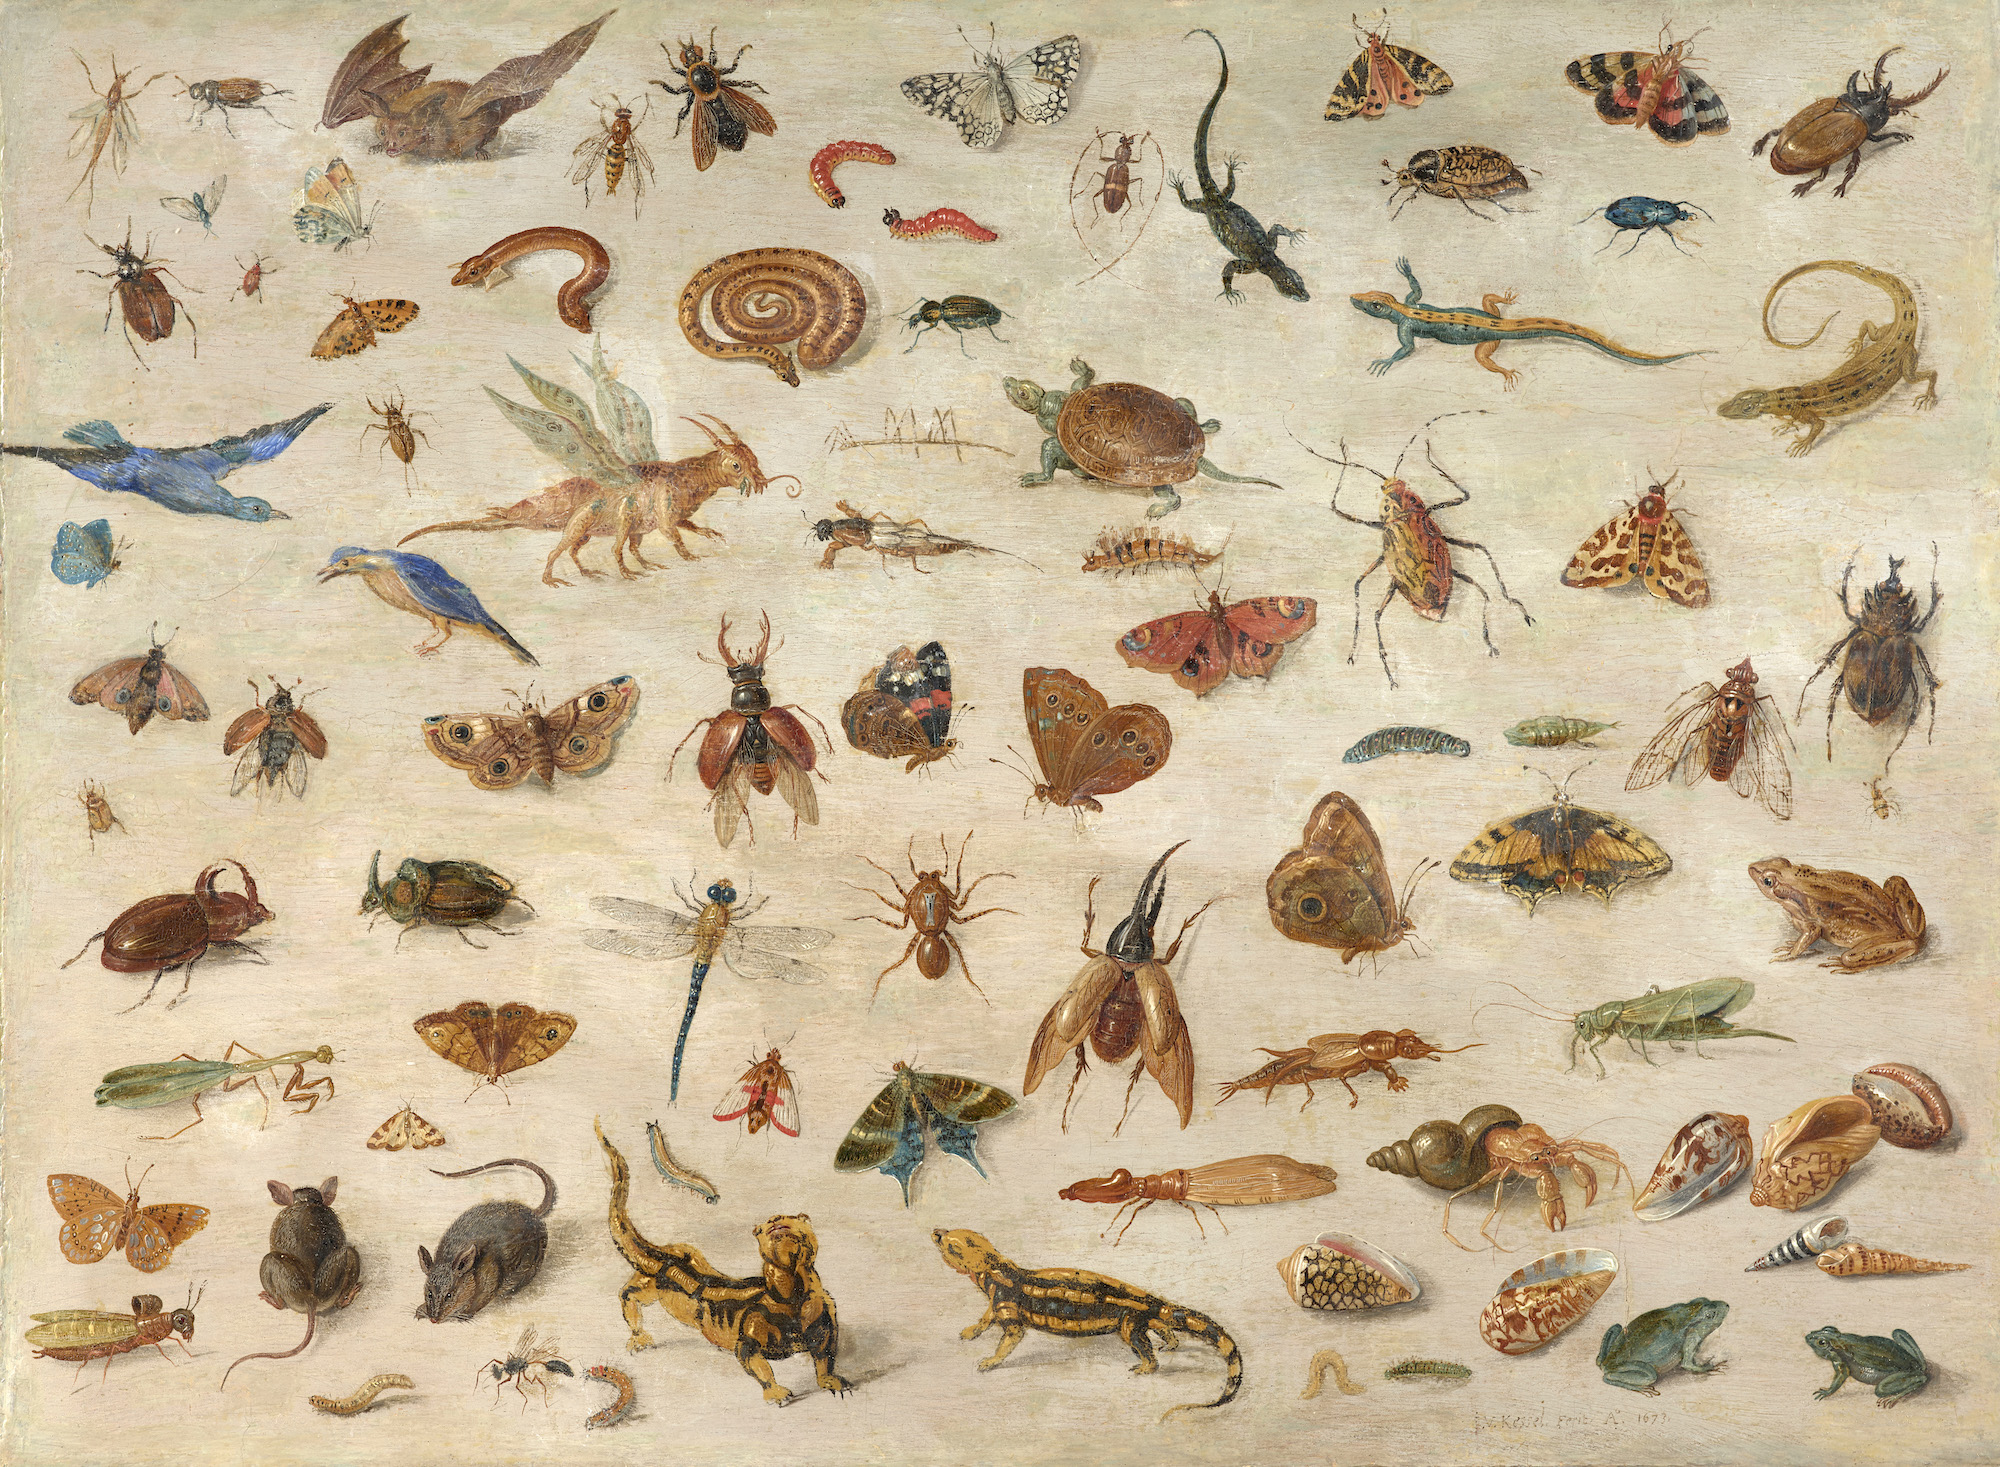 Jan van Kessel l’Ancien (1626-1679), Insectes, batraciens, coquillages et souris. Huile sur panneau, transposé, 33 x 44,50 cm. Estimé : 200 000/400 000 €. Photo service de presse. © Artcurial